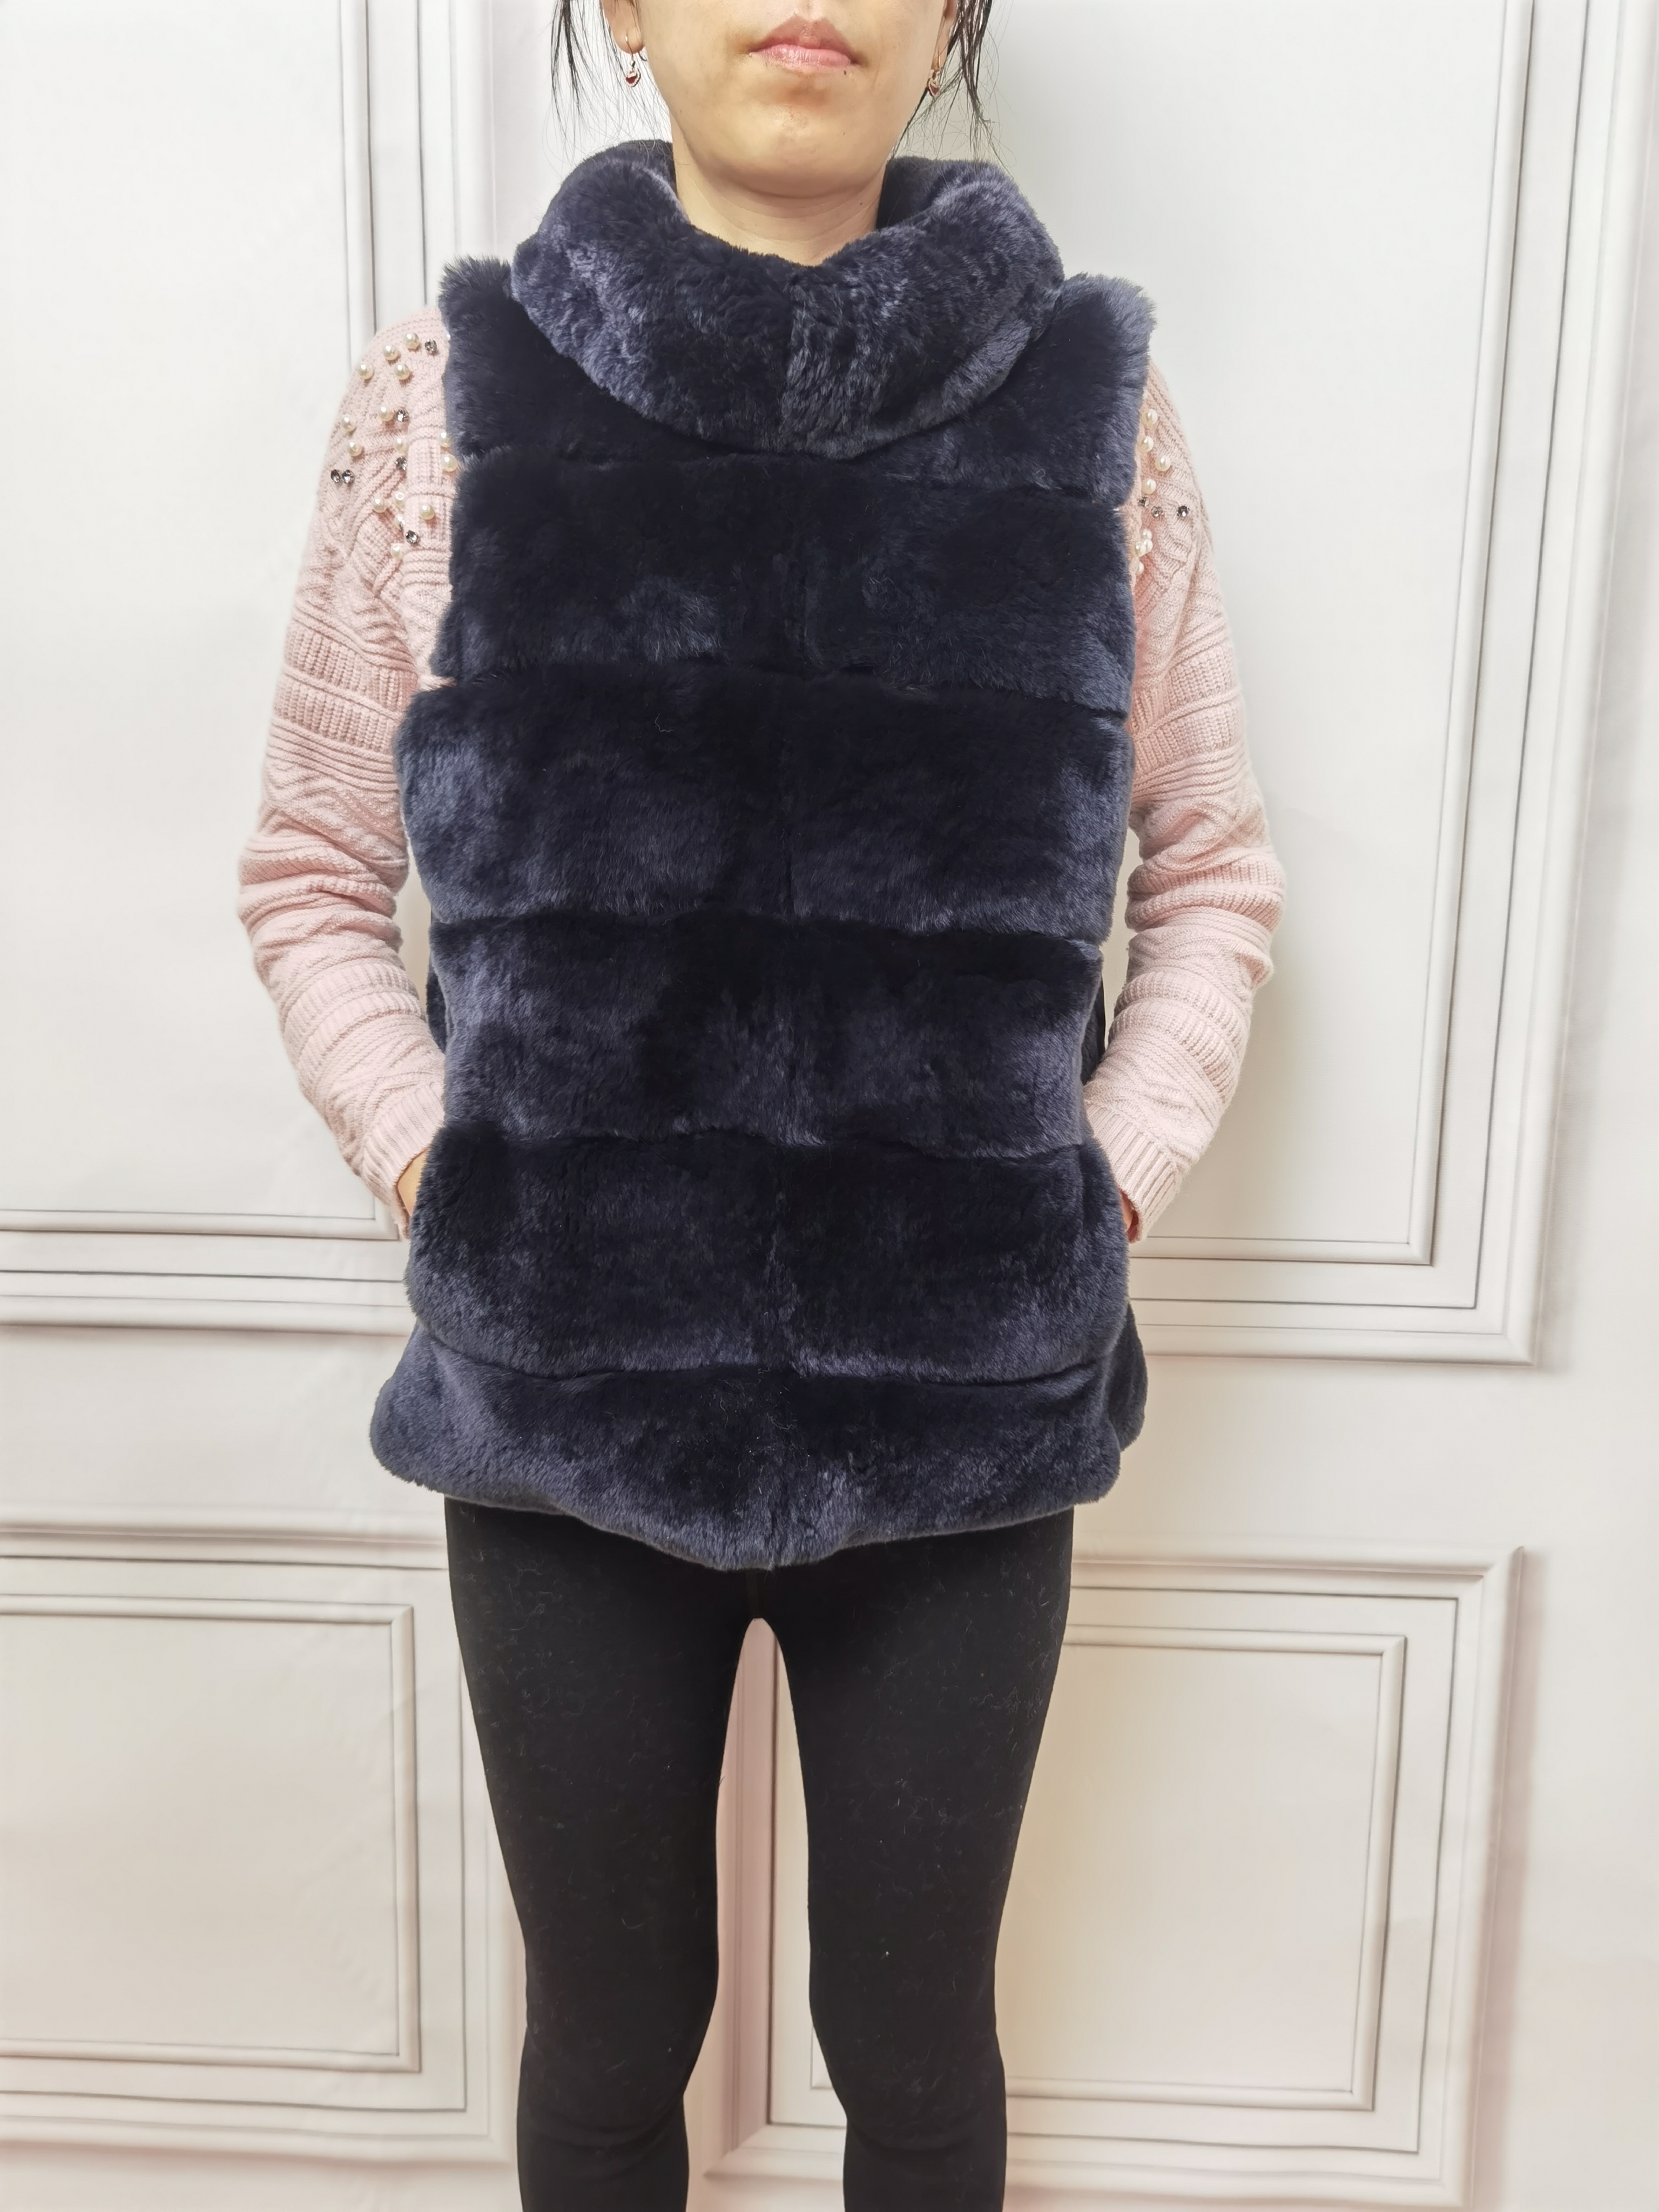 HG7036 የክረምት ሴቶች Femme Gilet Fur Waistcoats የሴቶች ታች እና የሬክስ ጥንቸል ልብሶች